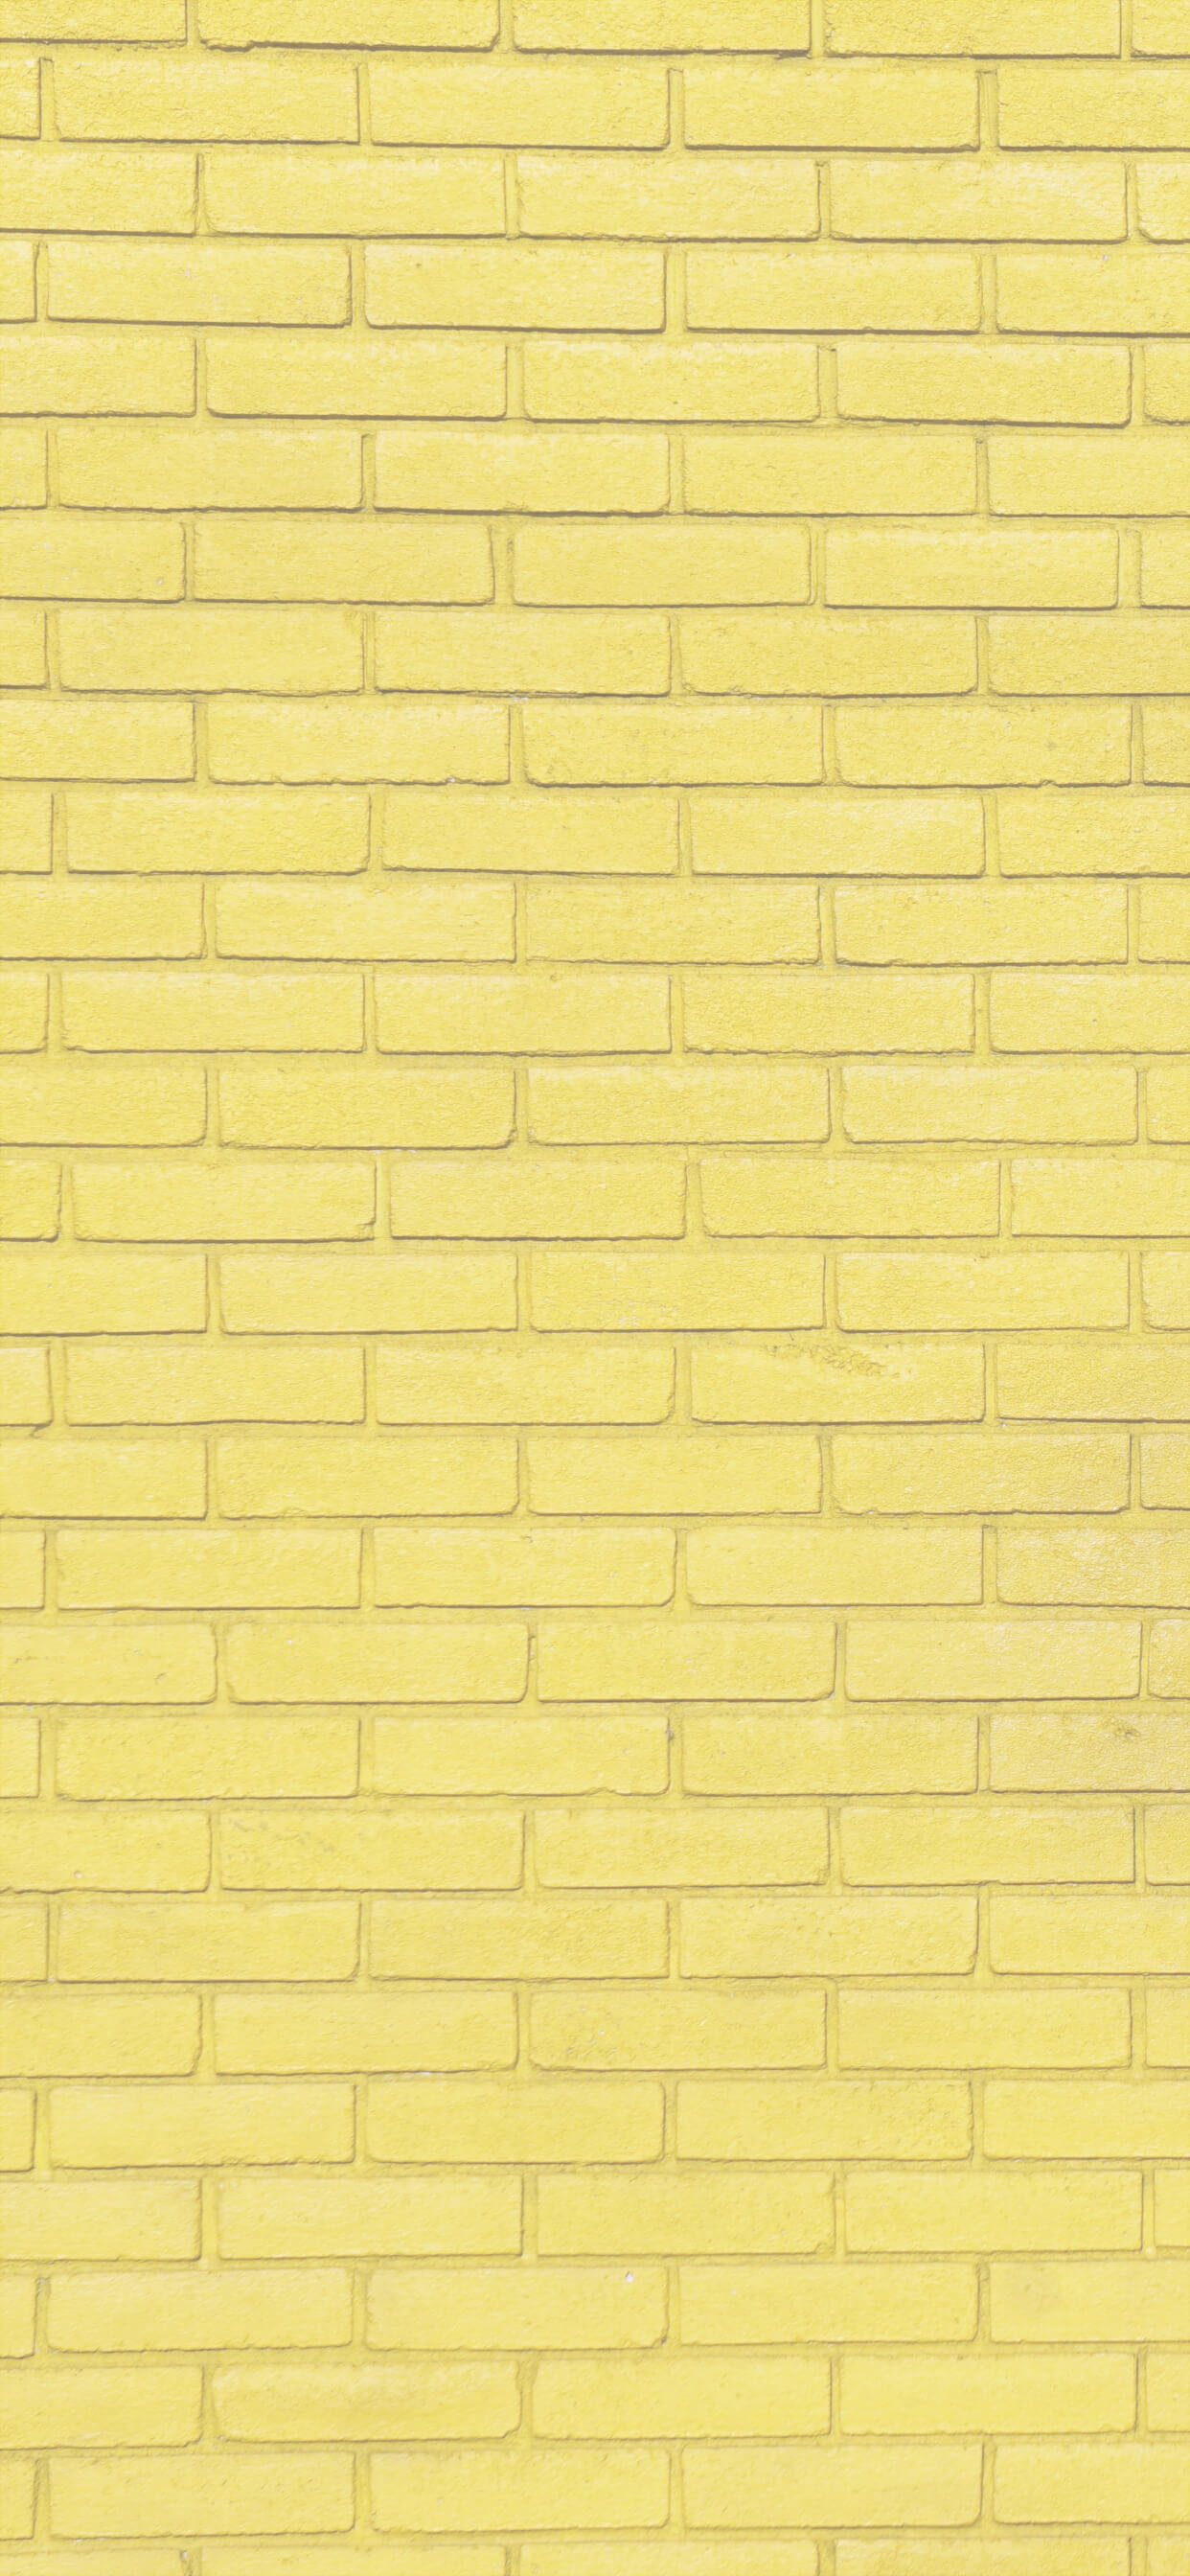 1000以上 Iphone 壁紙 黄色 4k品質の壁紙画像